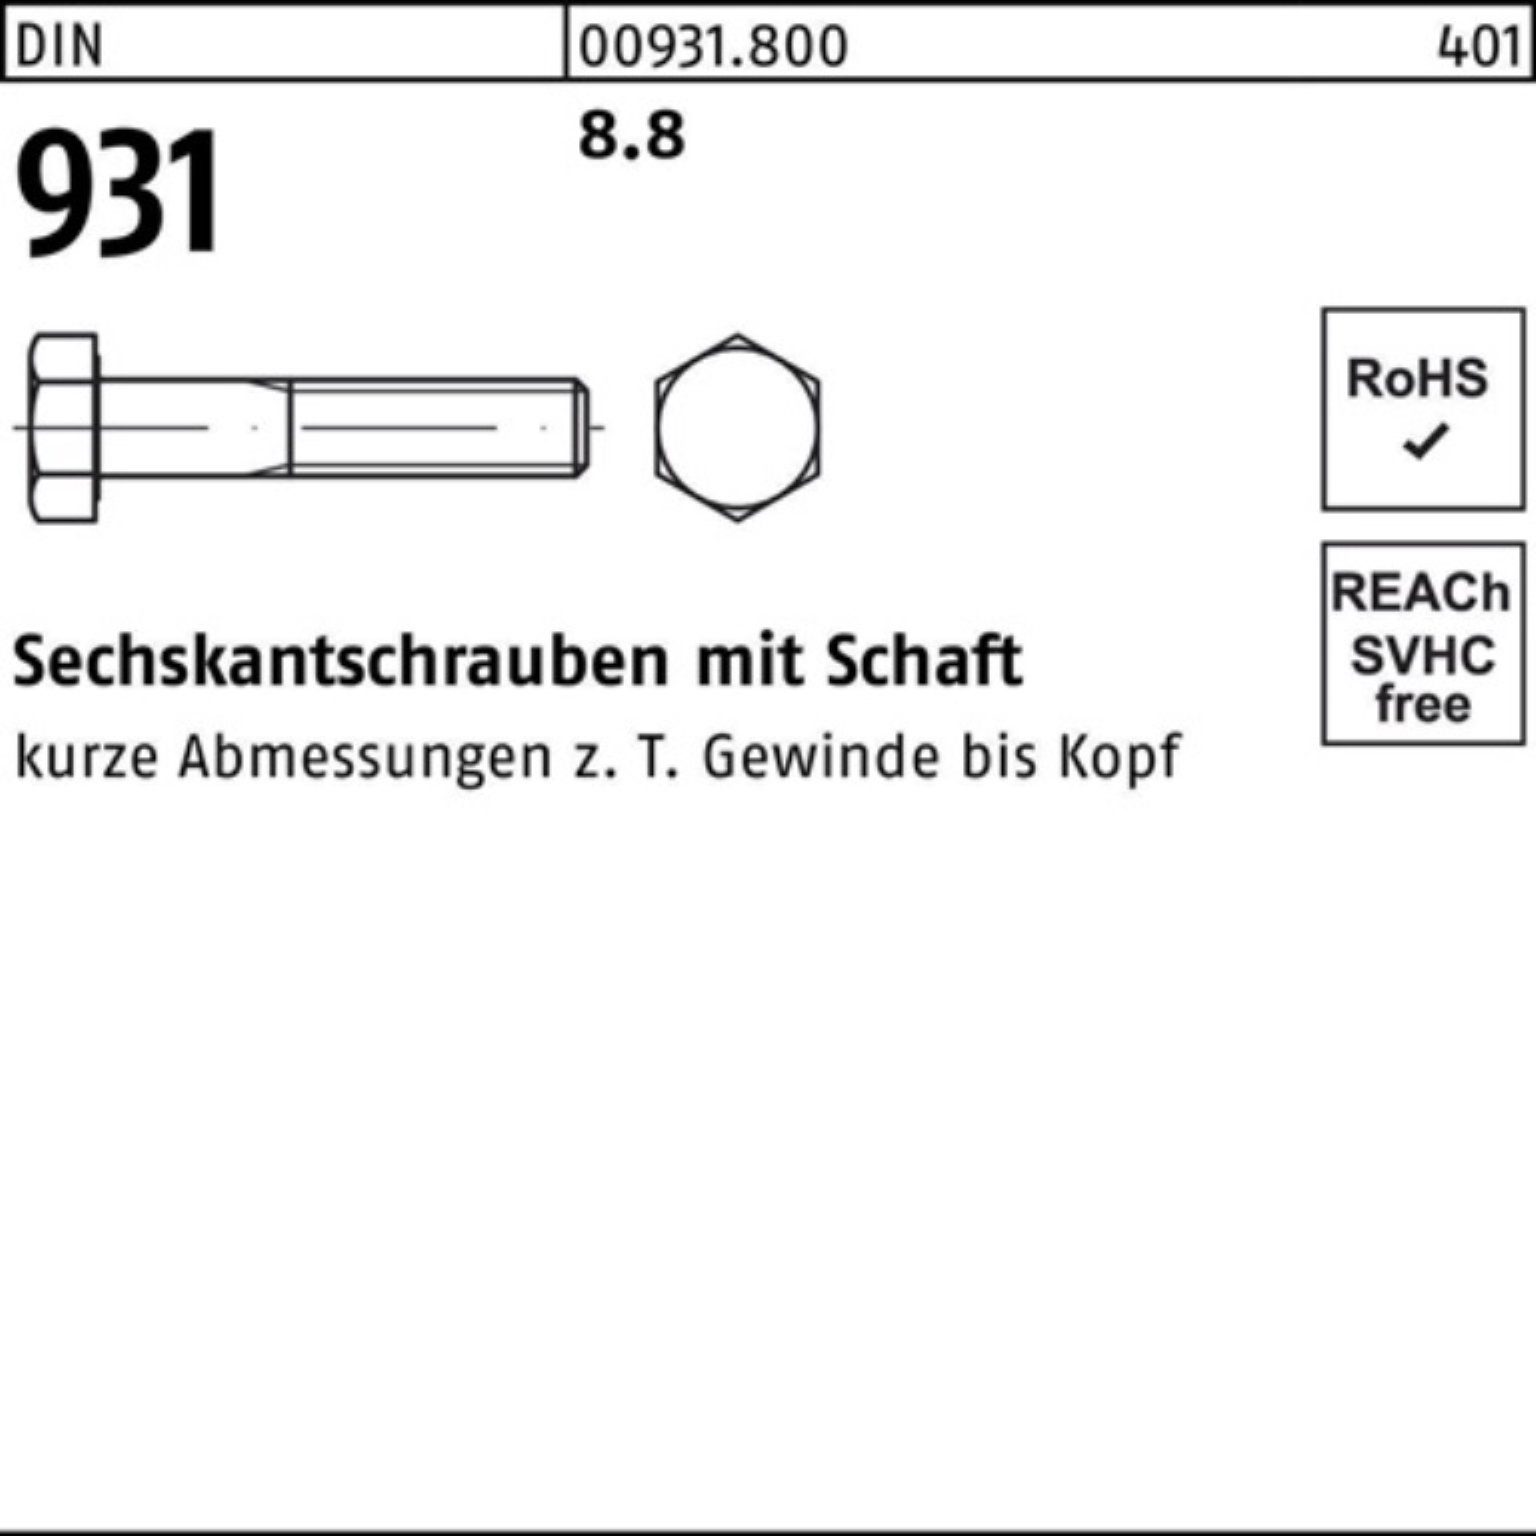 Reyher Sechskantschraube 1 Stück 8.8 100er 140 DIN Sechskantschraube 931 Schaft Pack DIN M36x